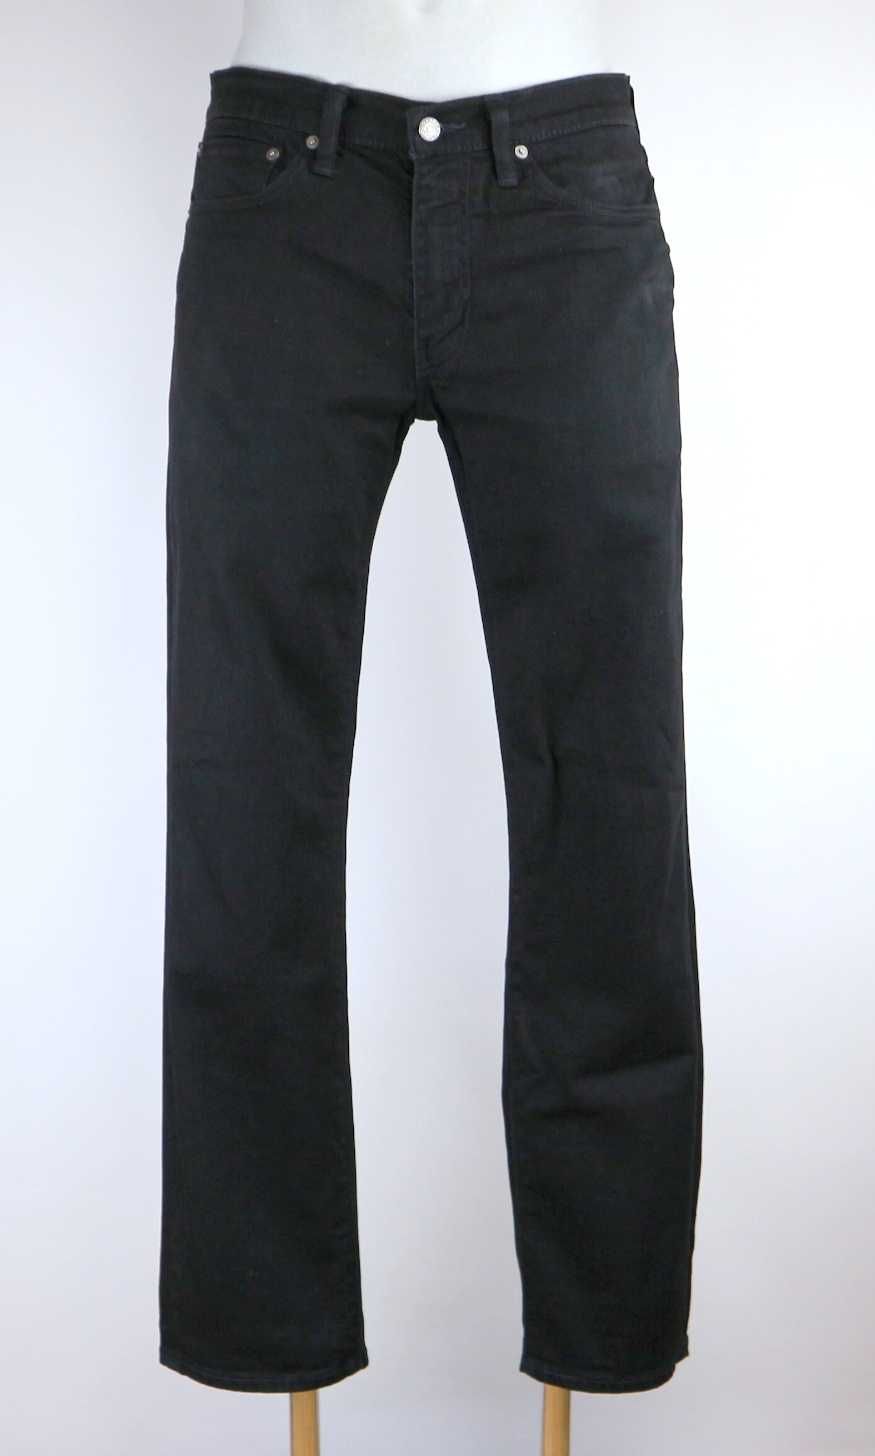 Levis 511 spodnie jeansy W34 L32 czarne pas 2 x 44/46 cm